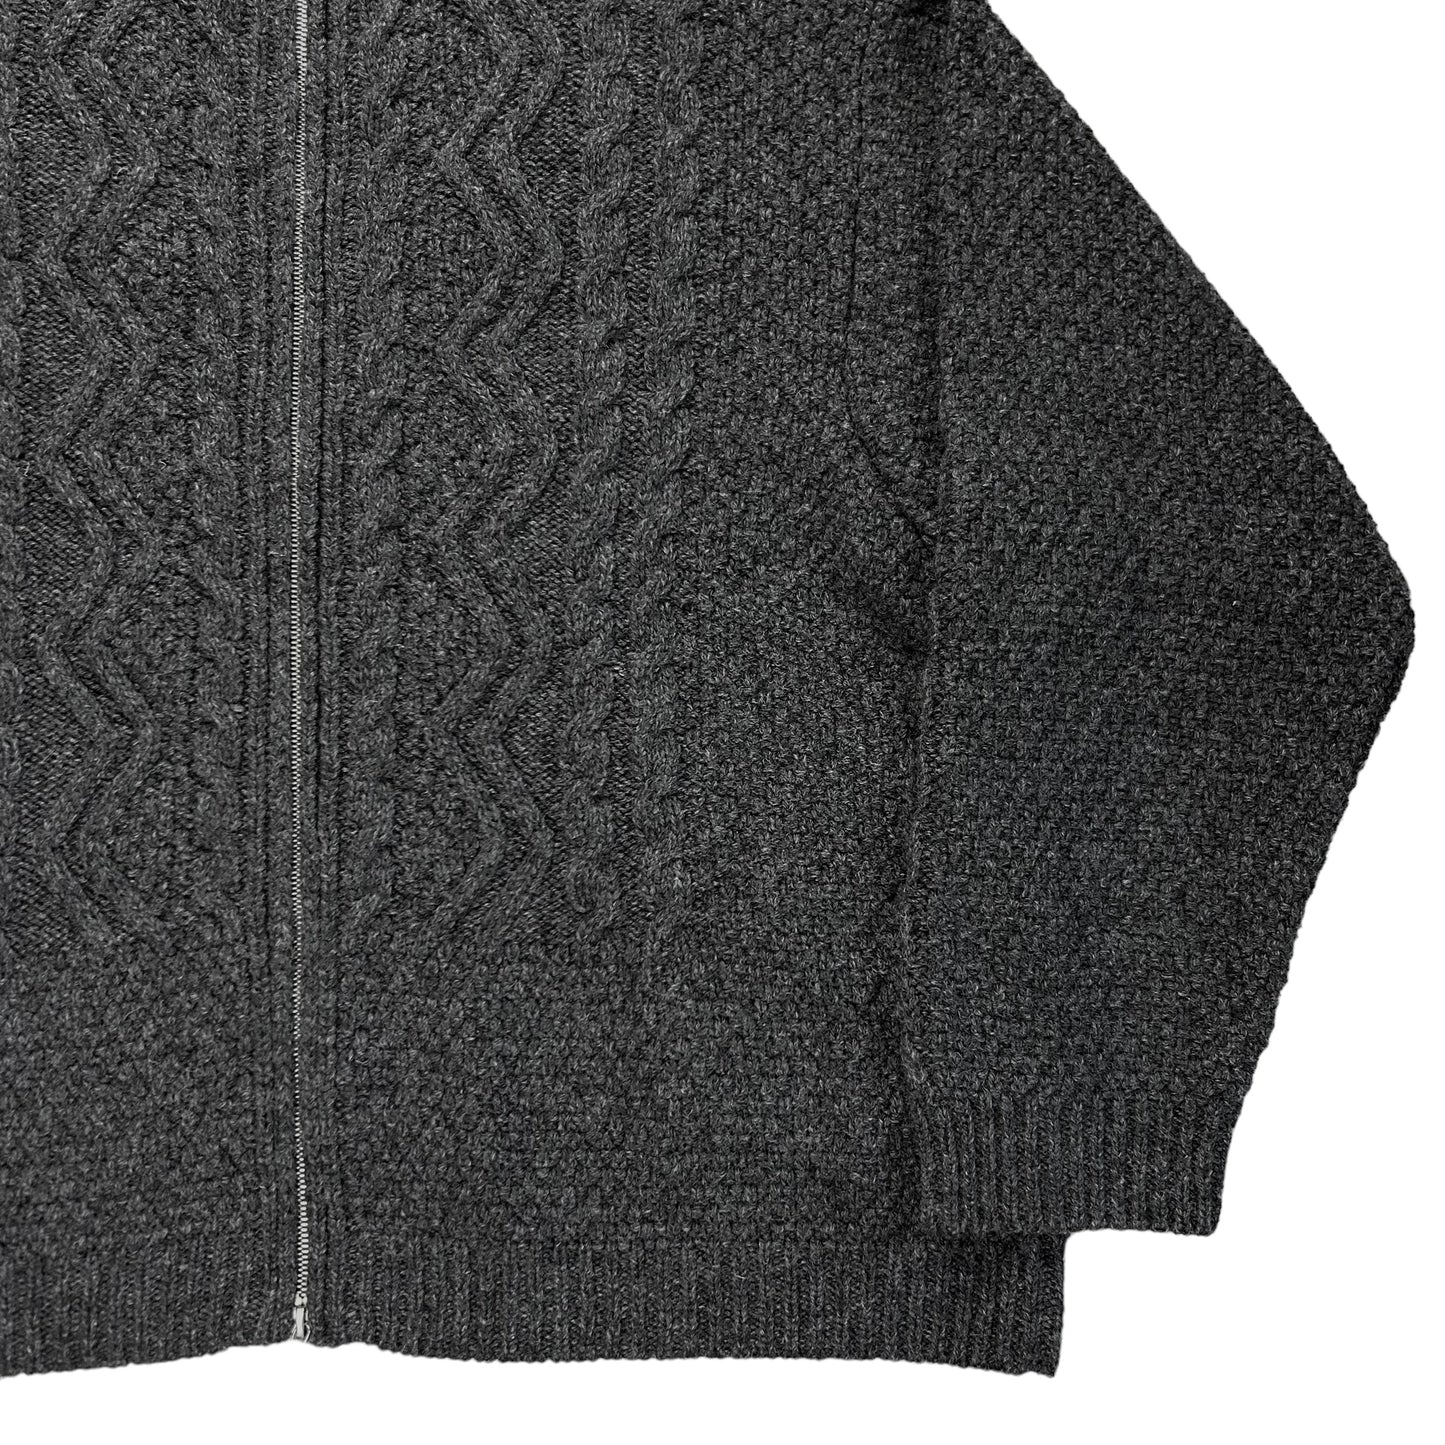 Dries Van Noten Cable Knit Zip Sweater